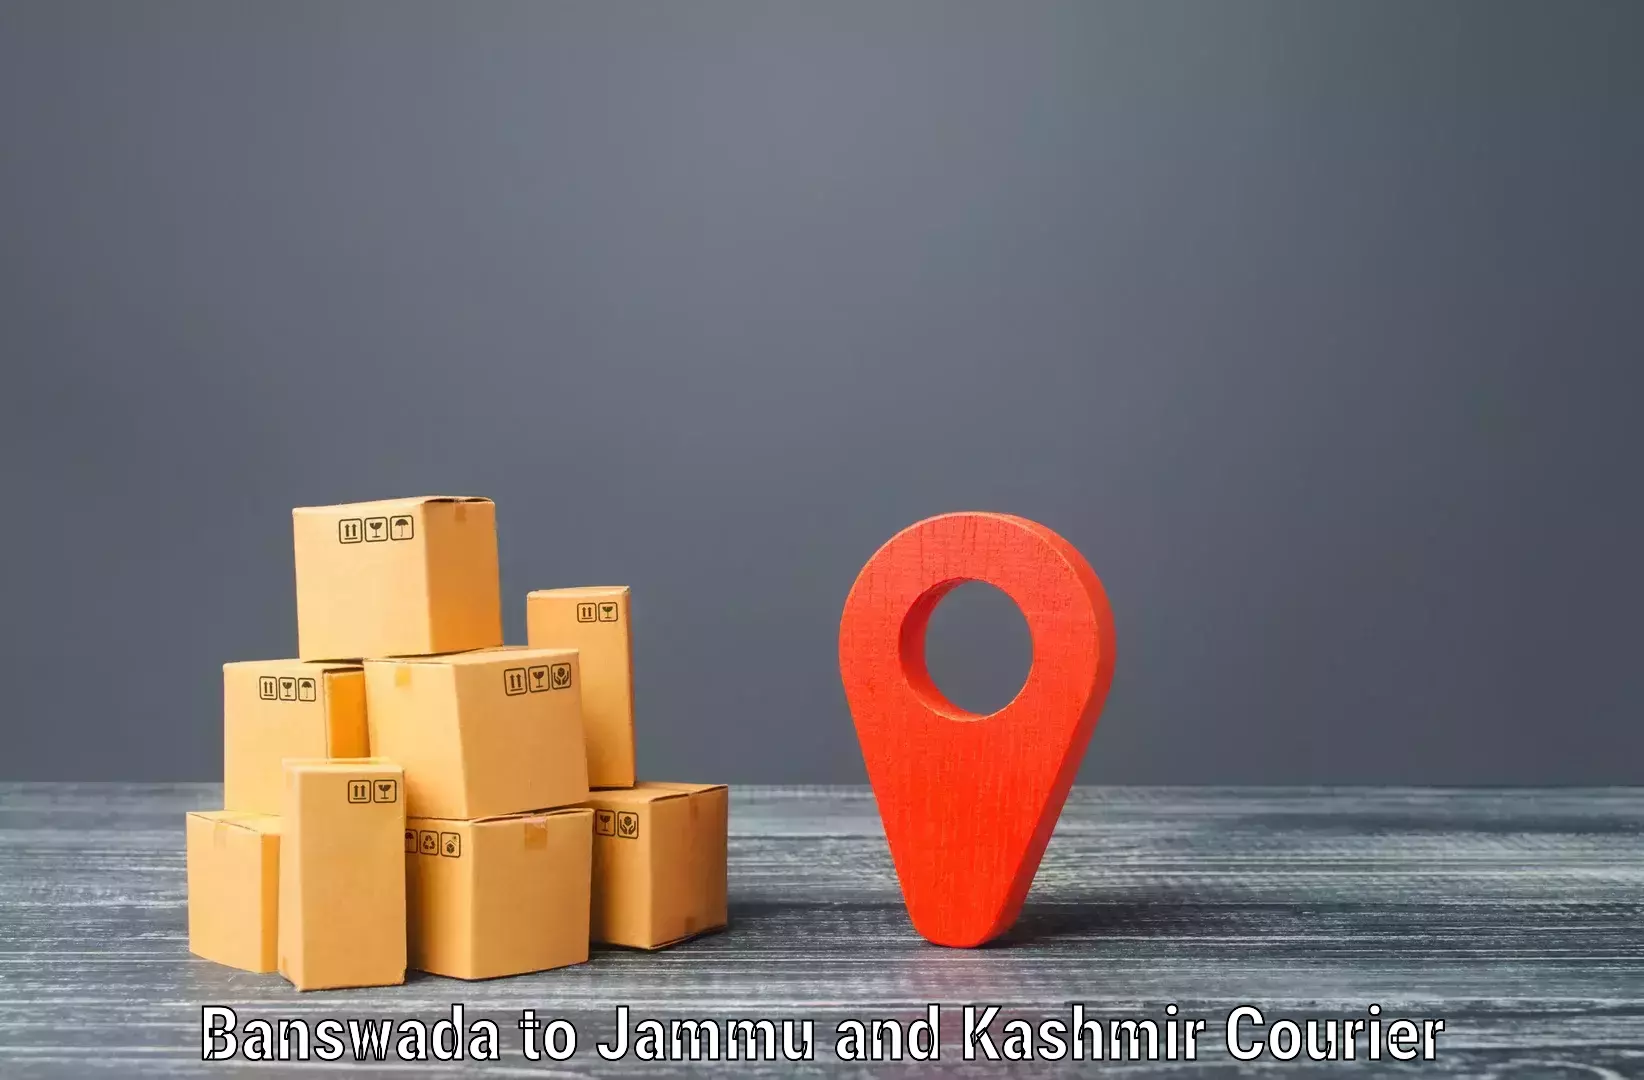 Urgent courier needs Banswada to Akhnoor